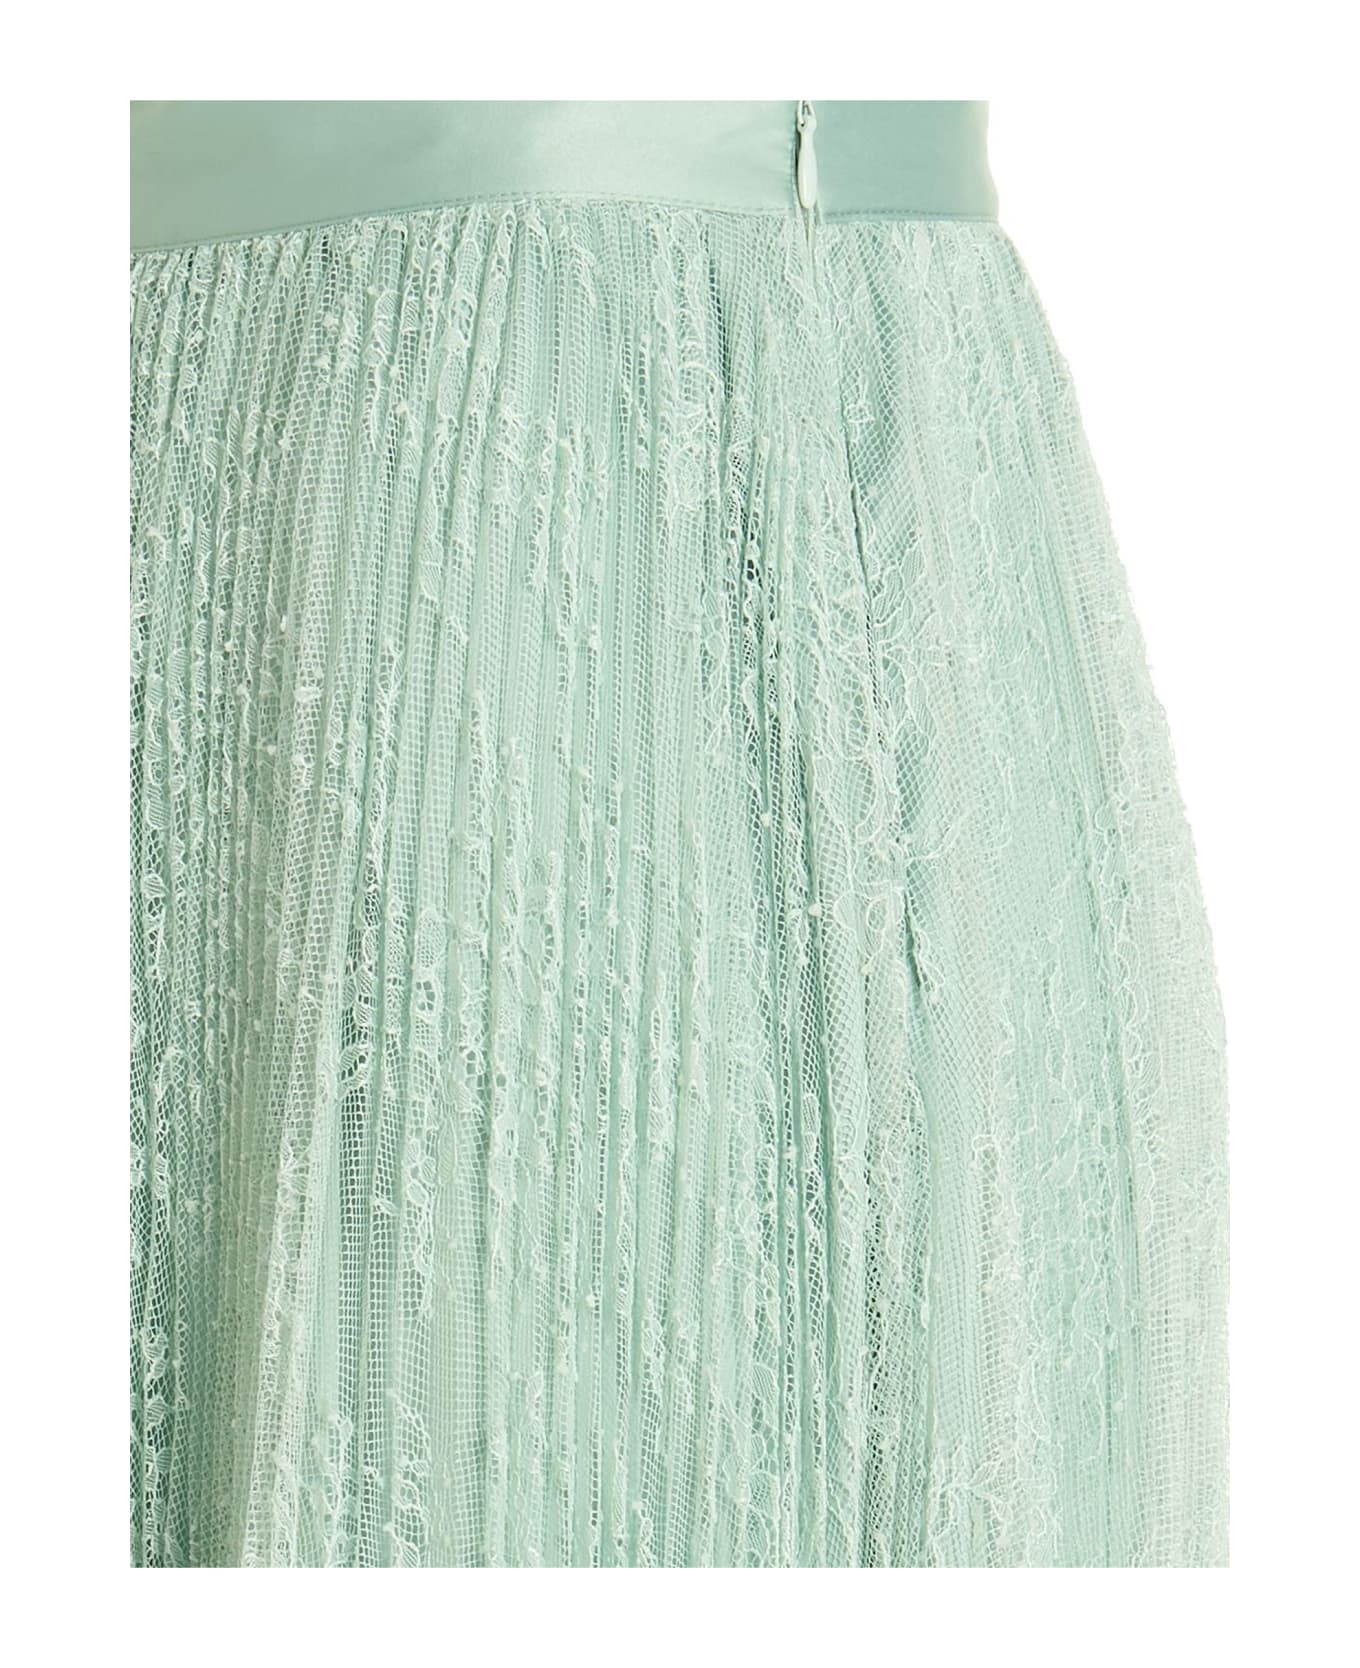 TwinSet Lace Skirt - Mint スカート